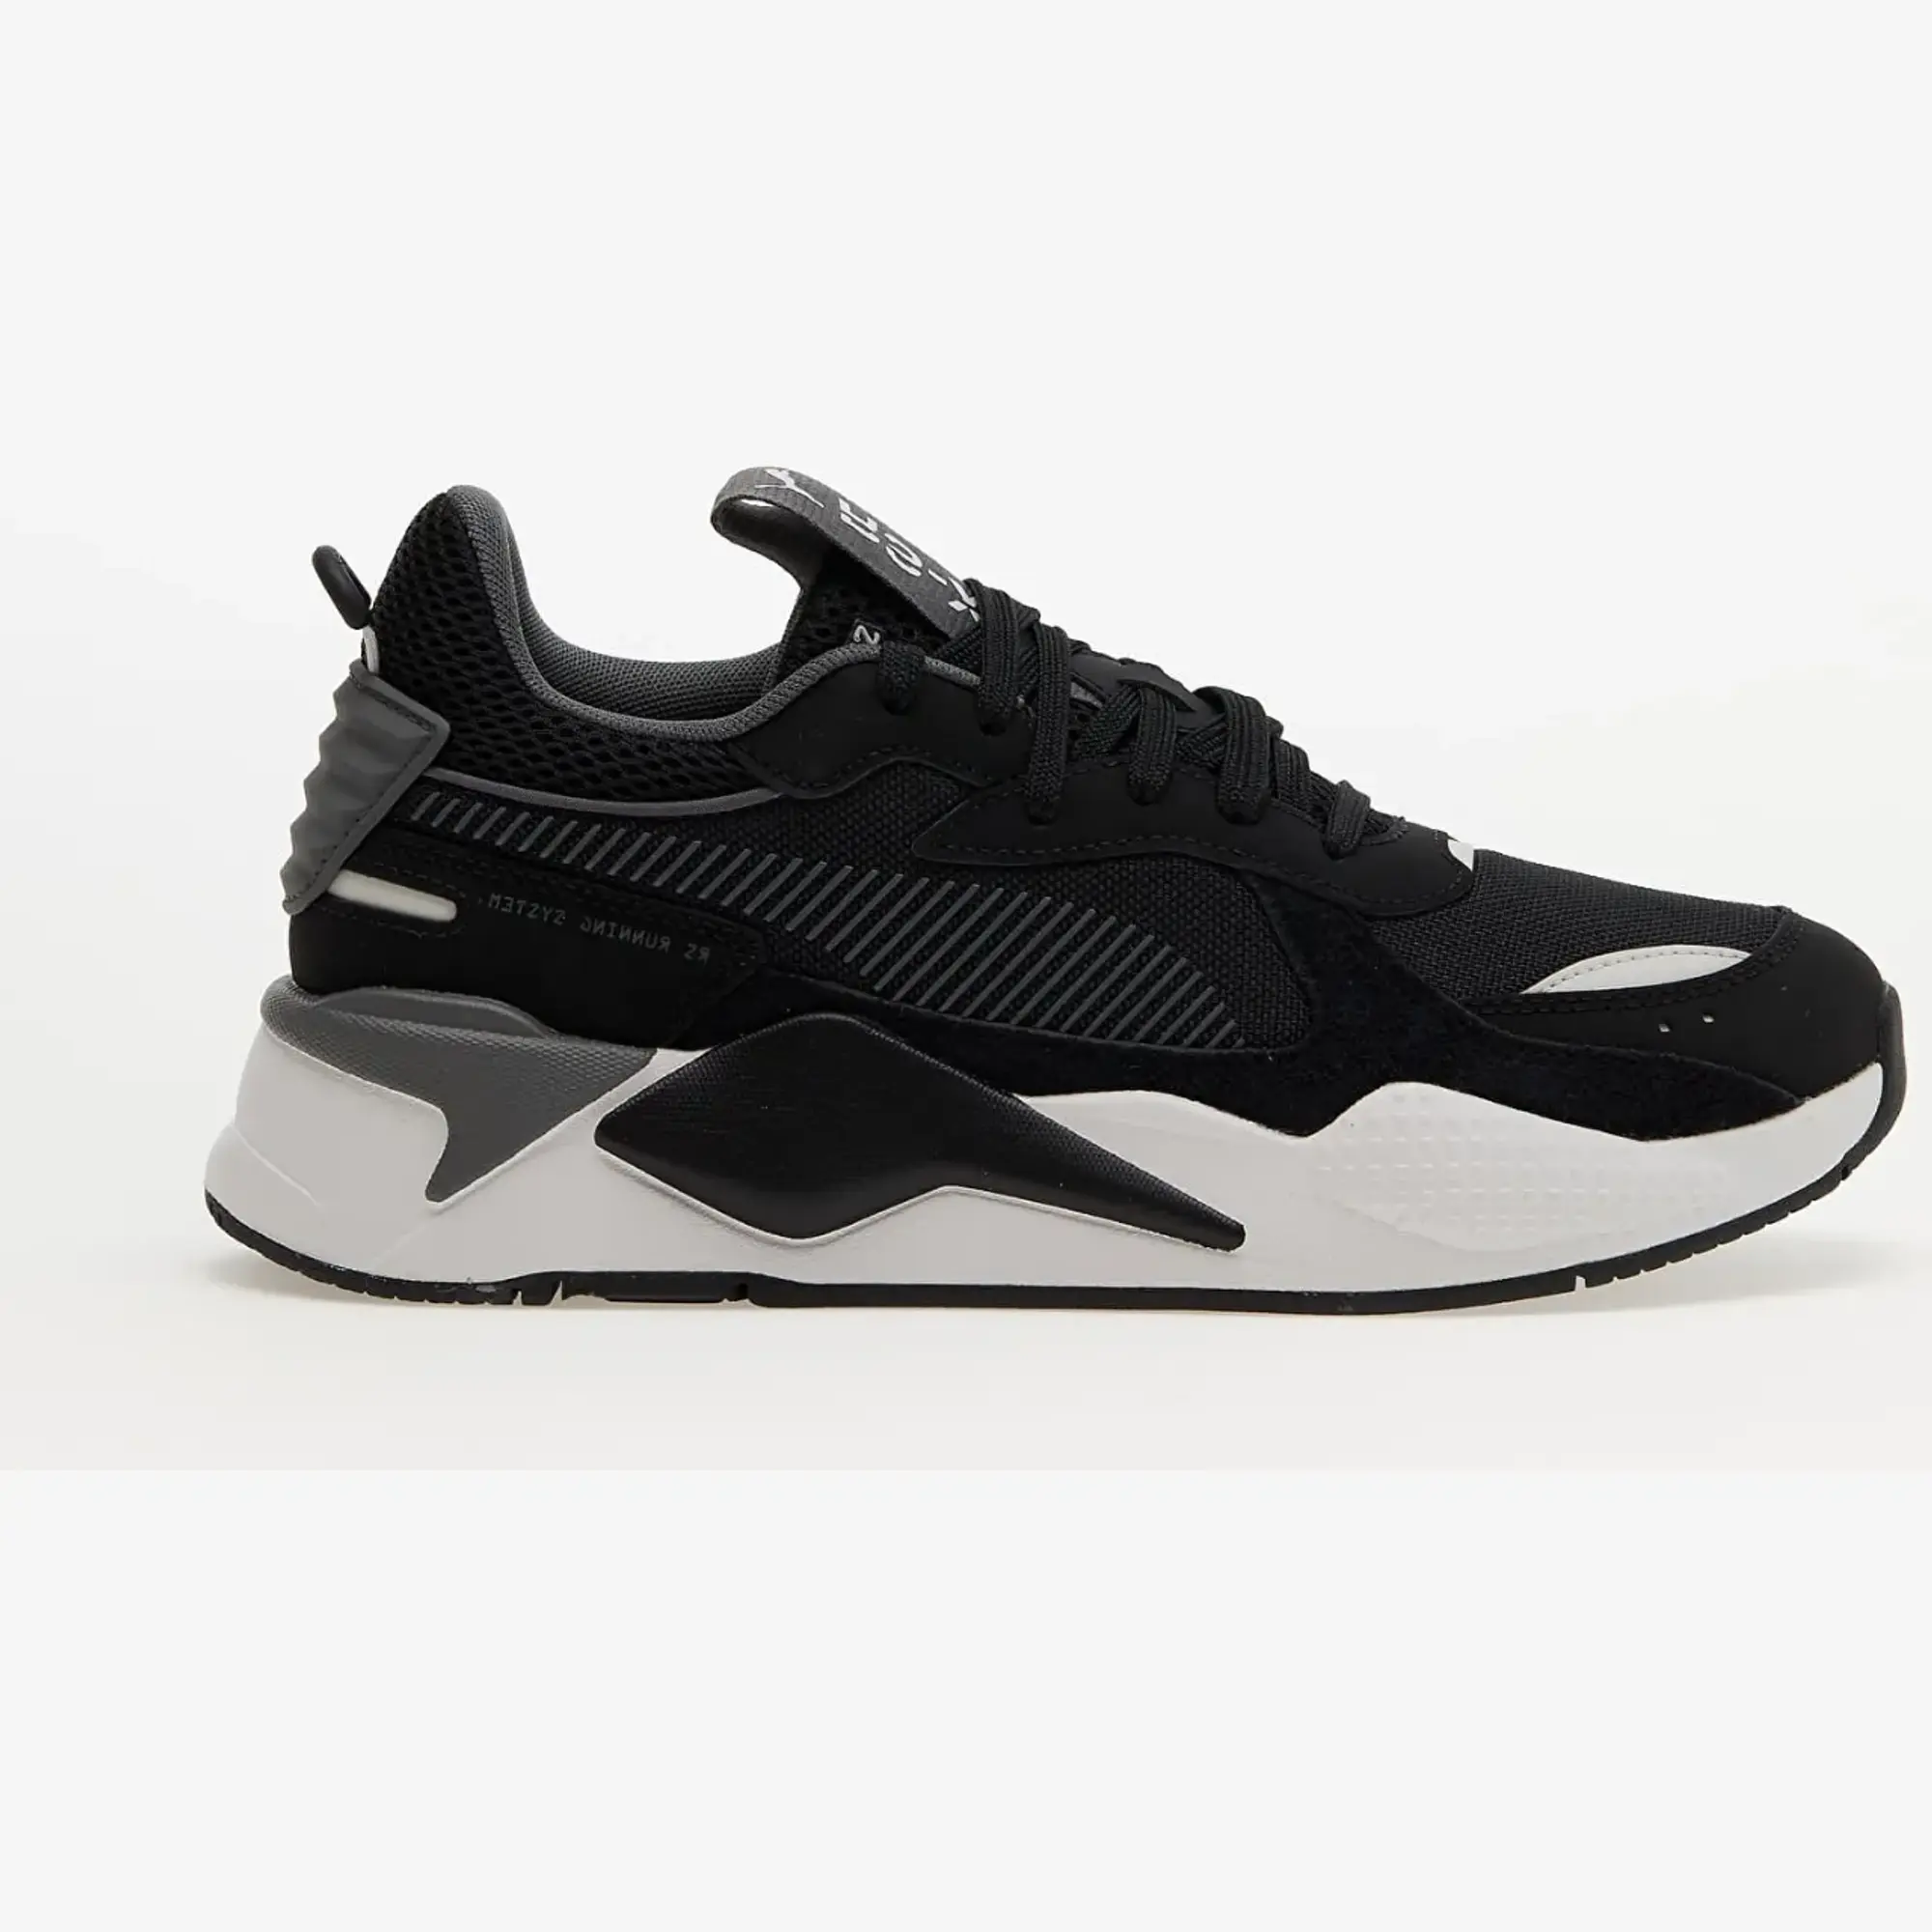 PUMA RS-X Suede Sneakers, Black/Glacial Grey